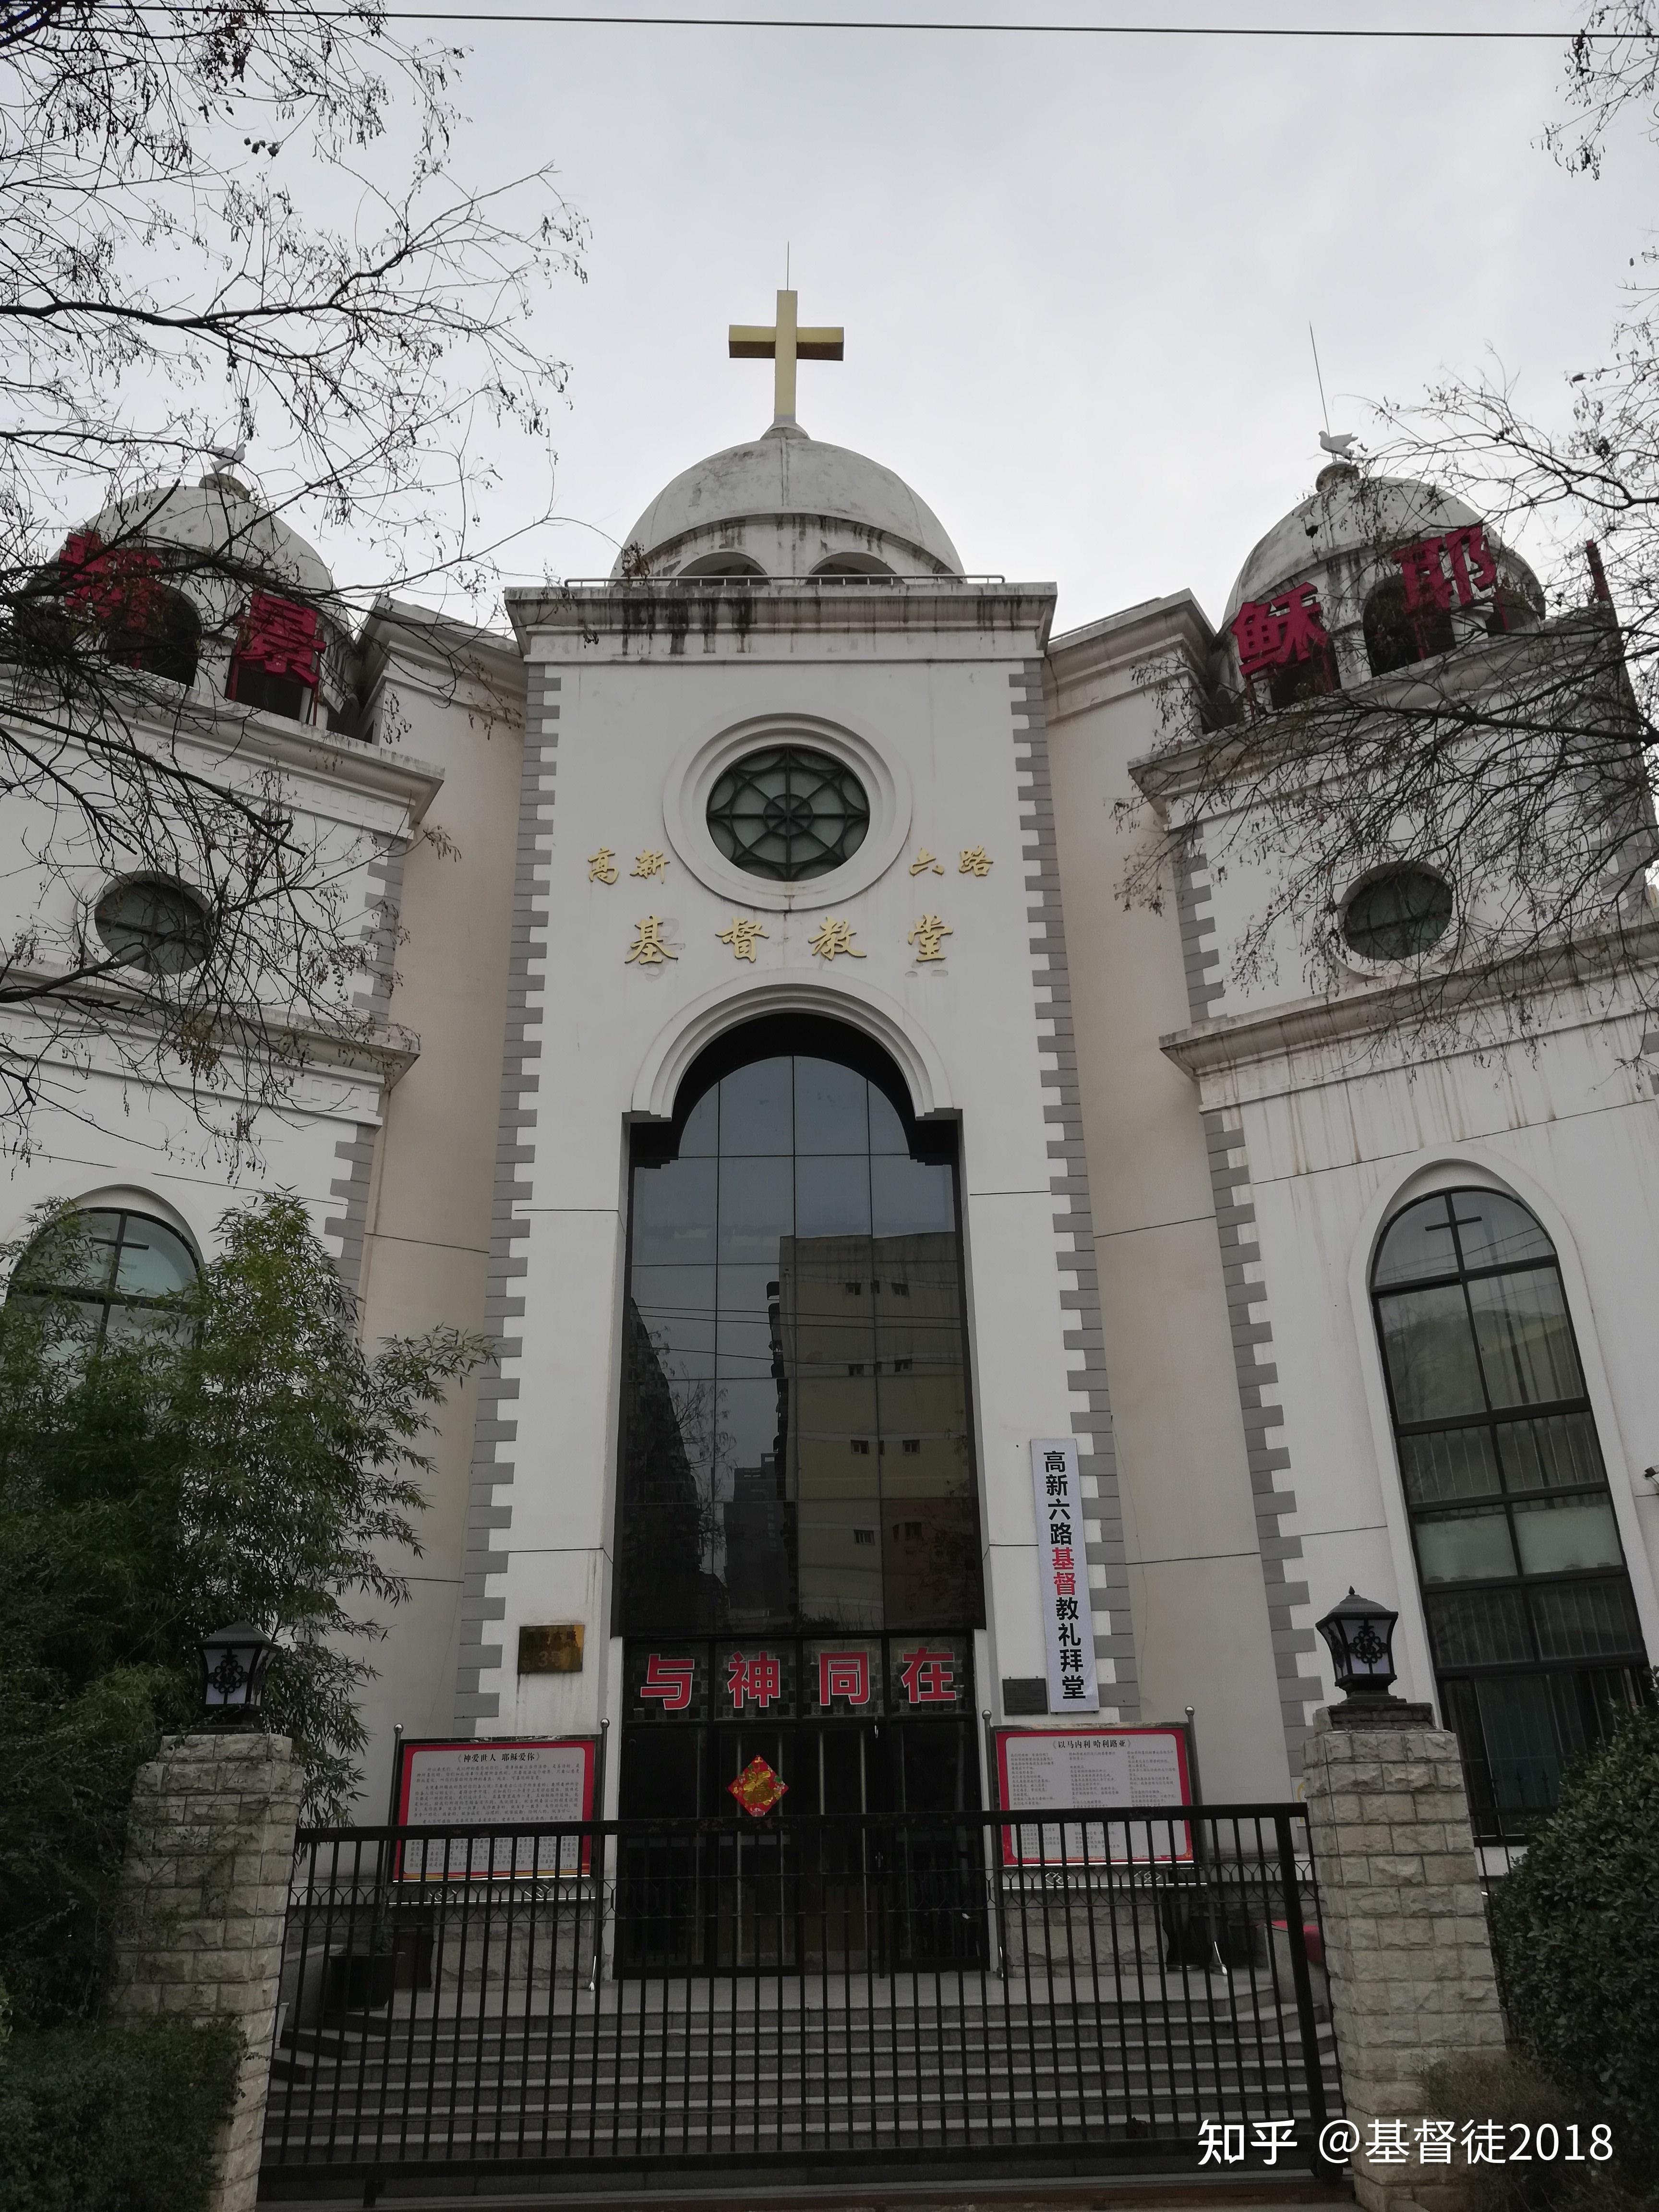 Wuxi Christian Church 无锡基督教堂 - Home